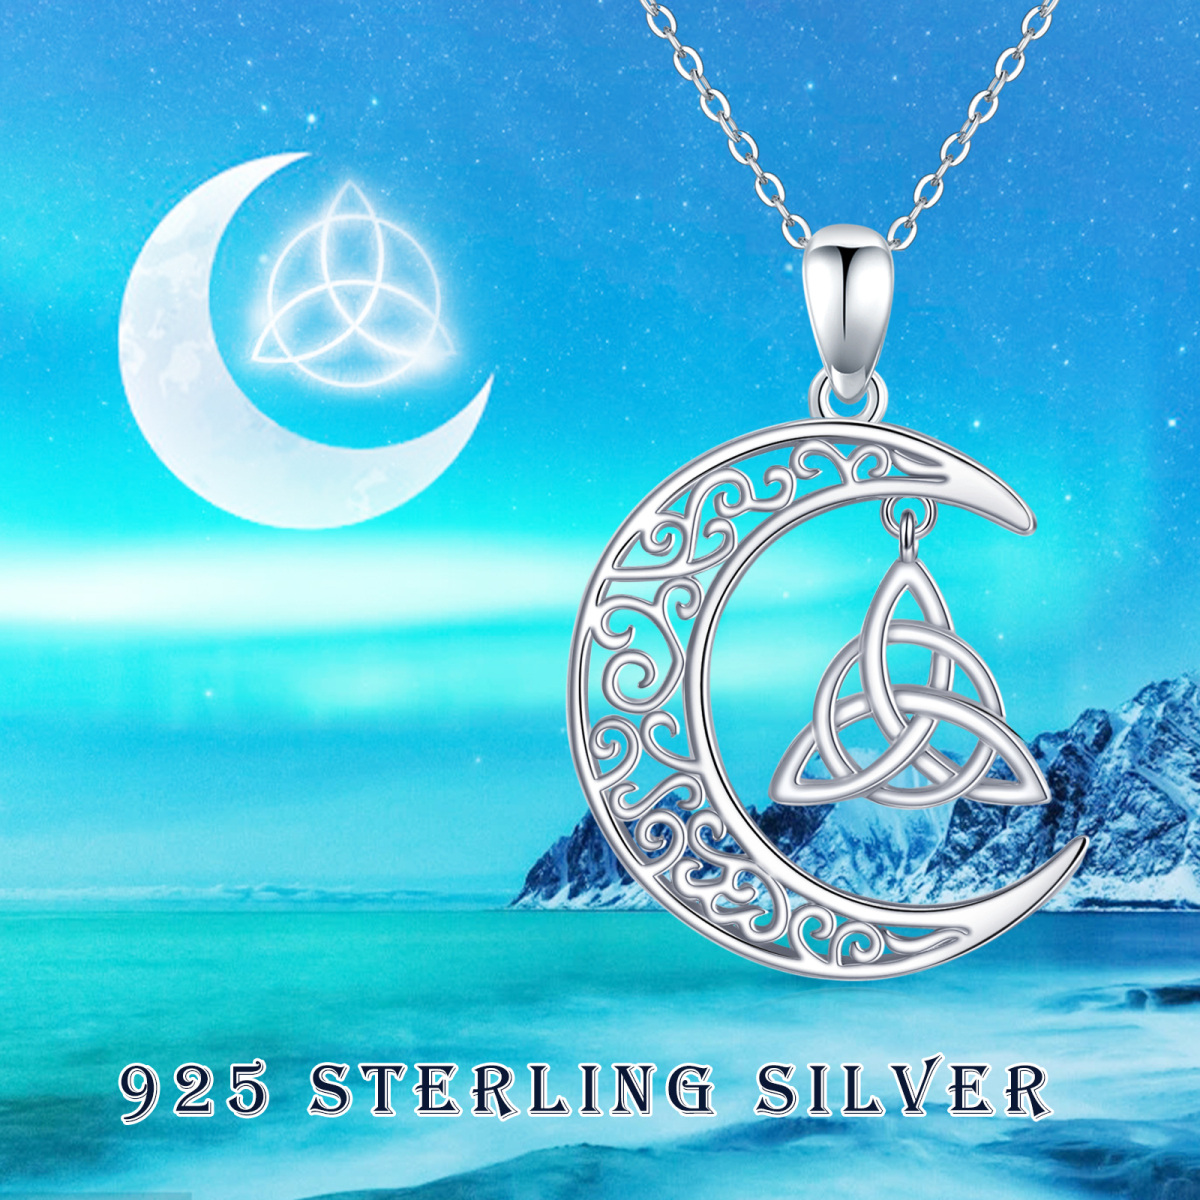 Sterling Silber Keltischer Knoten & Mond Kabelkette Halskette-5